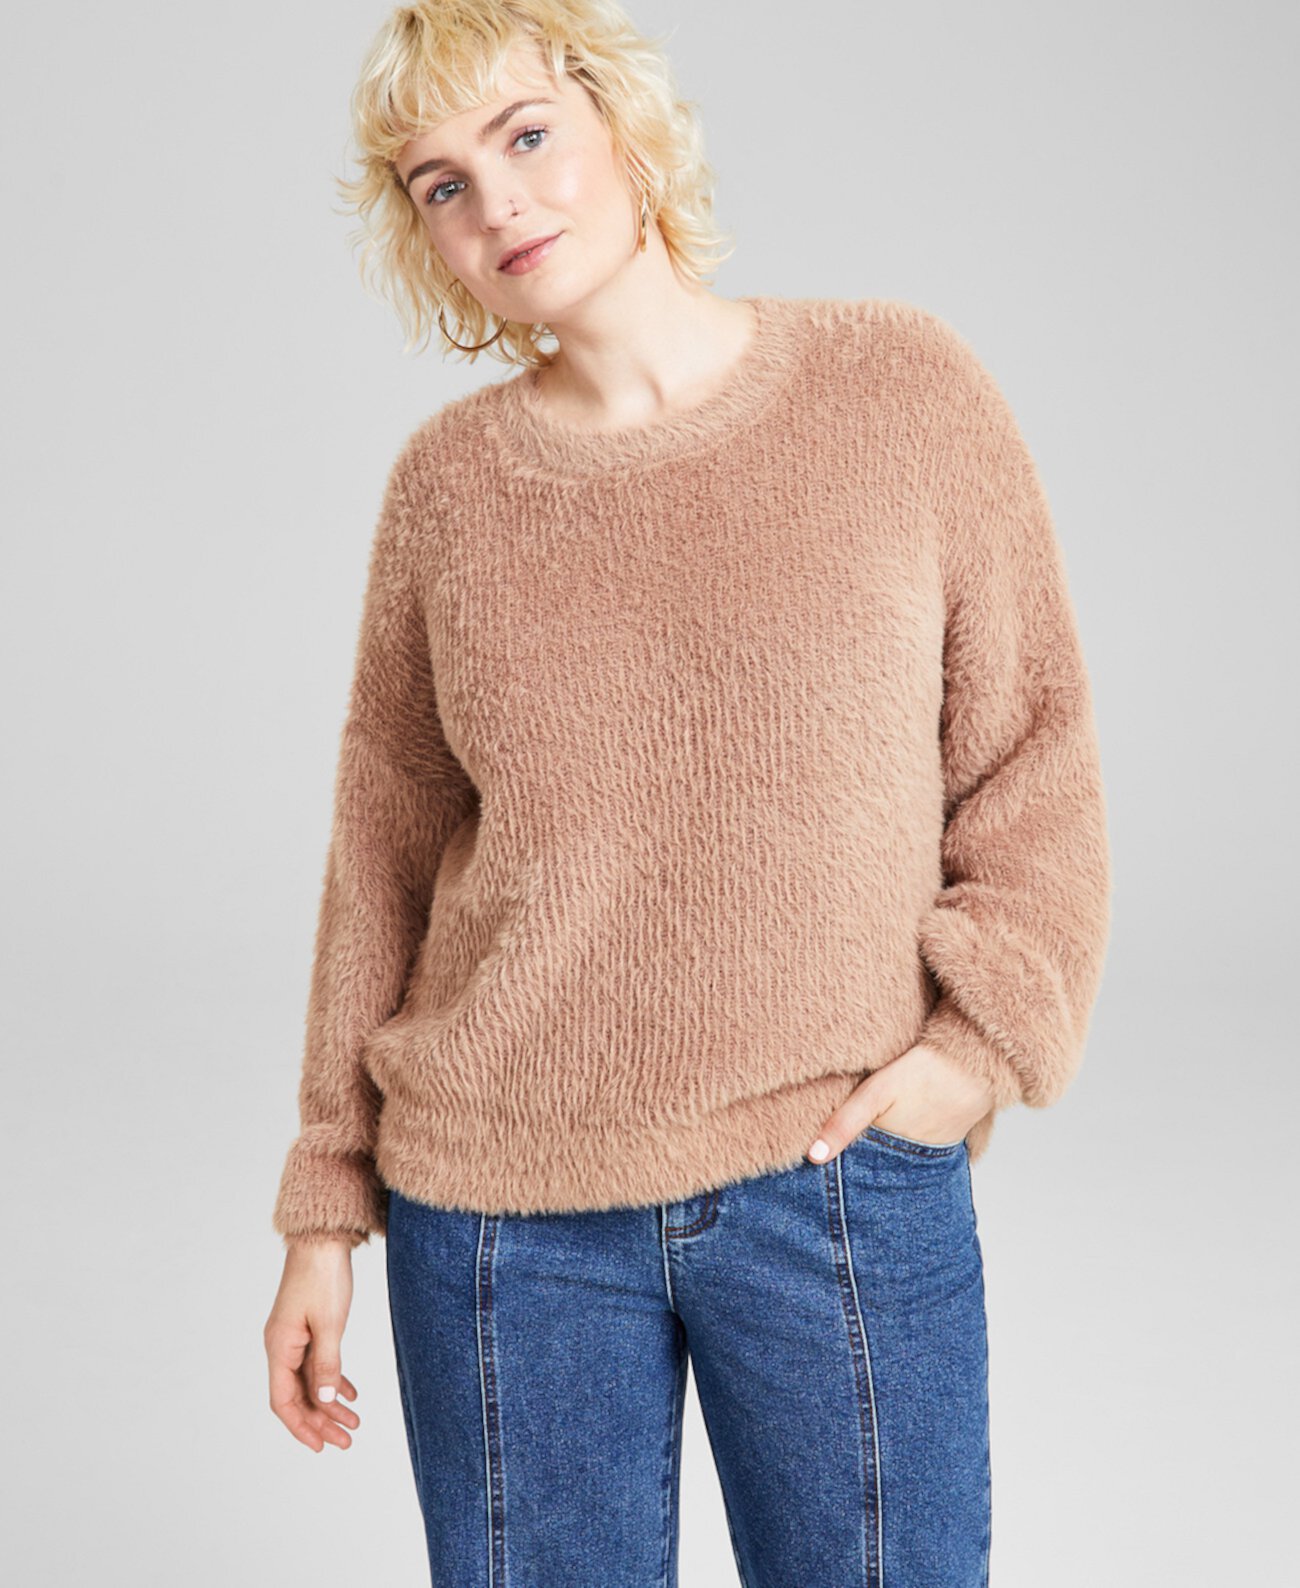 Женский свитер с круглым вырезом и ресницами, созданный для Macy's And Now This